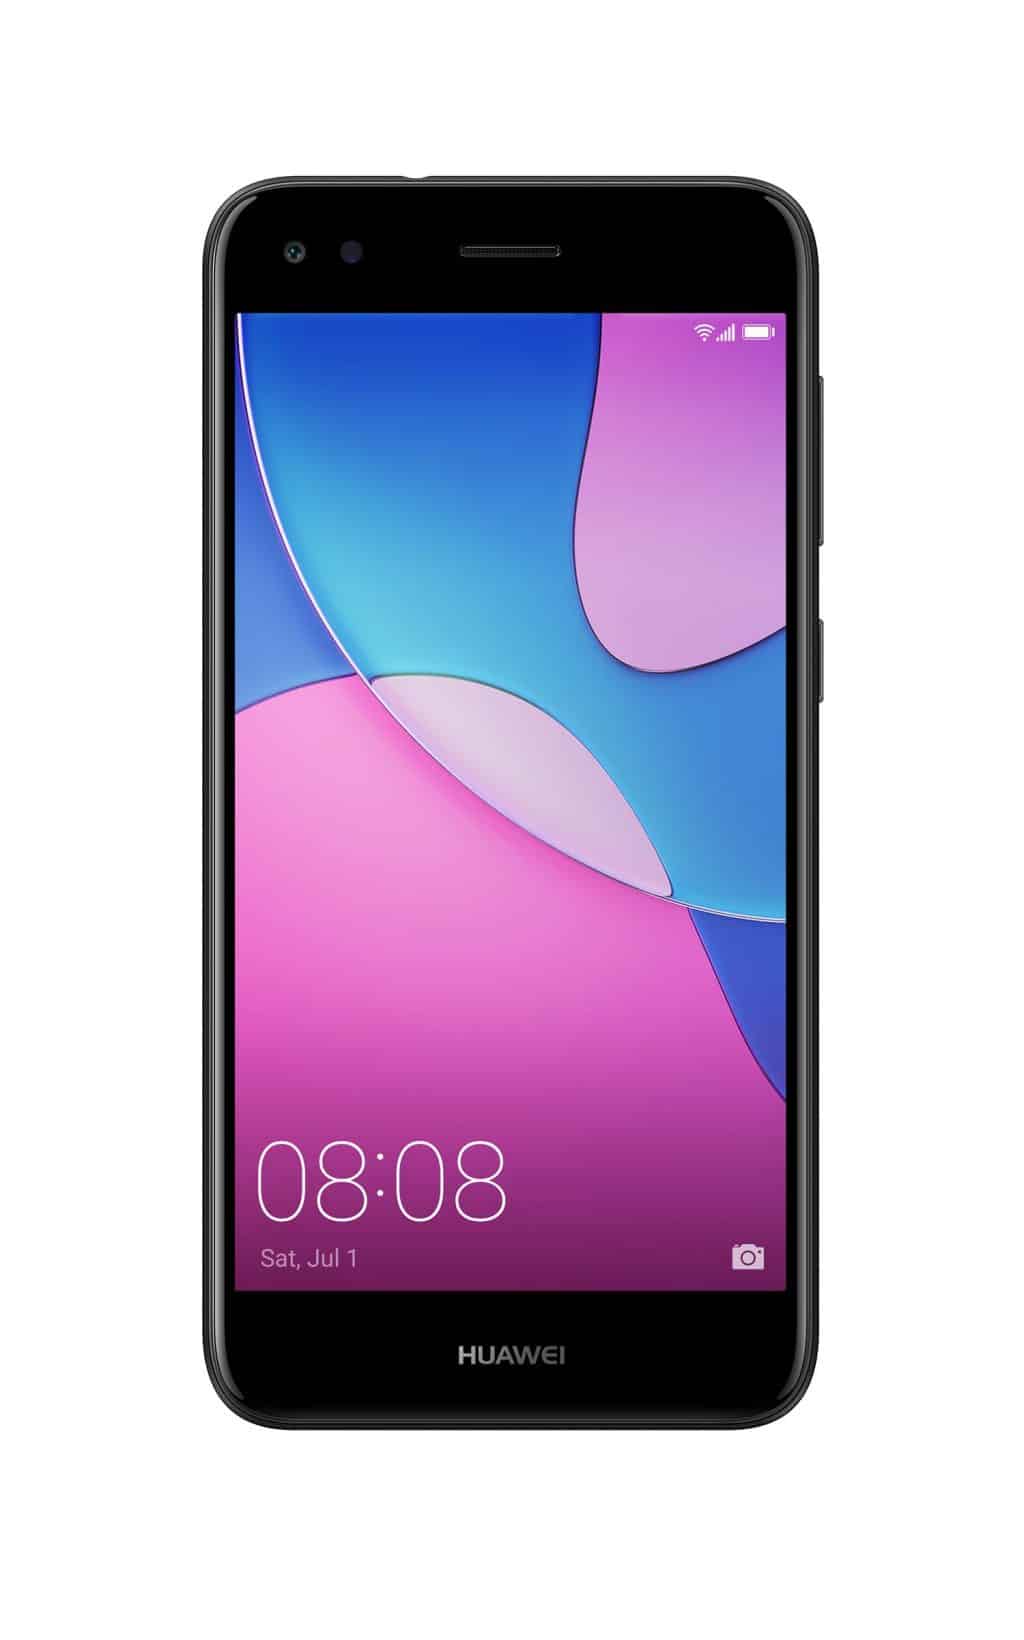 Træts webspindel Romantik gås Billig Huawei P9 Lite Mini reparation - 2 års garanti - FixPhone